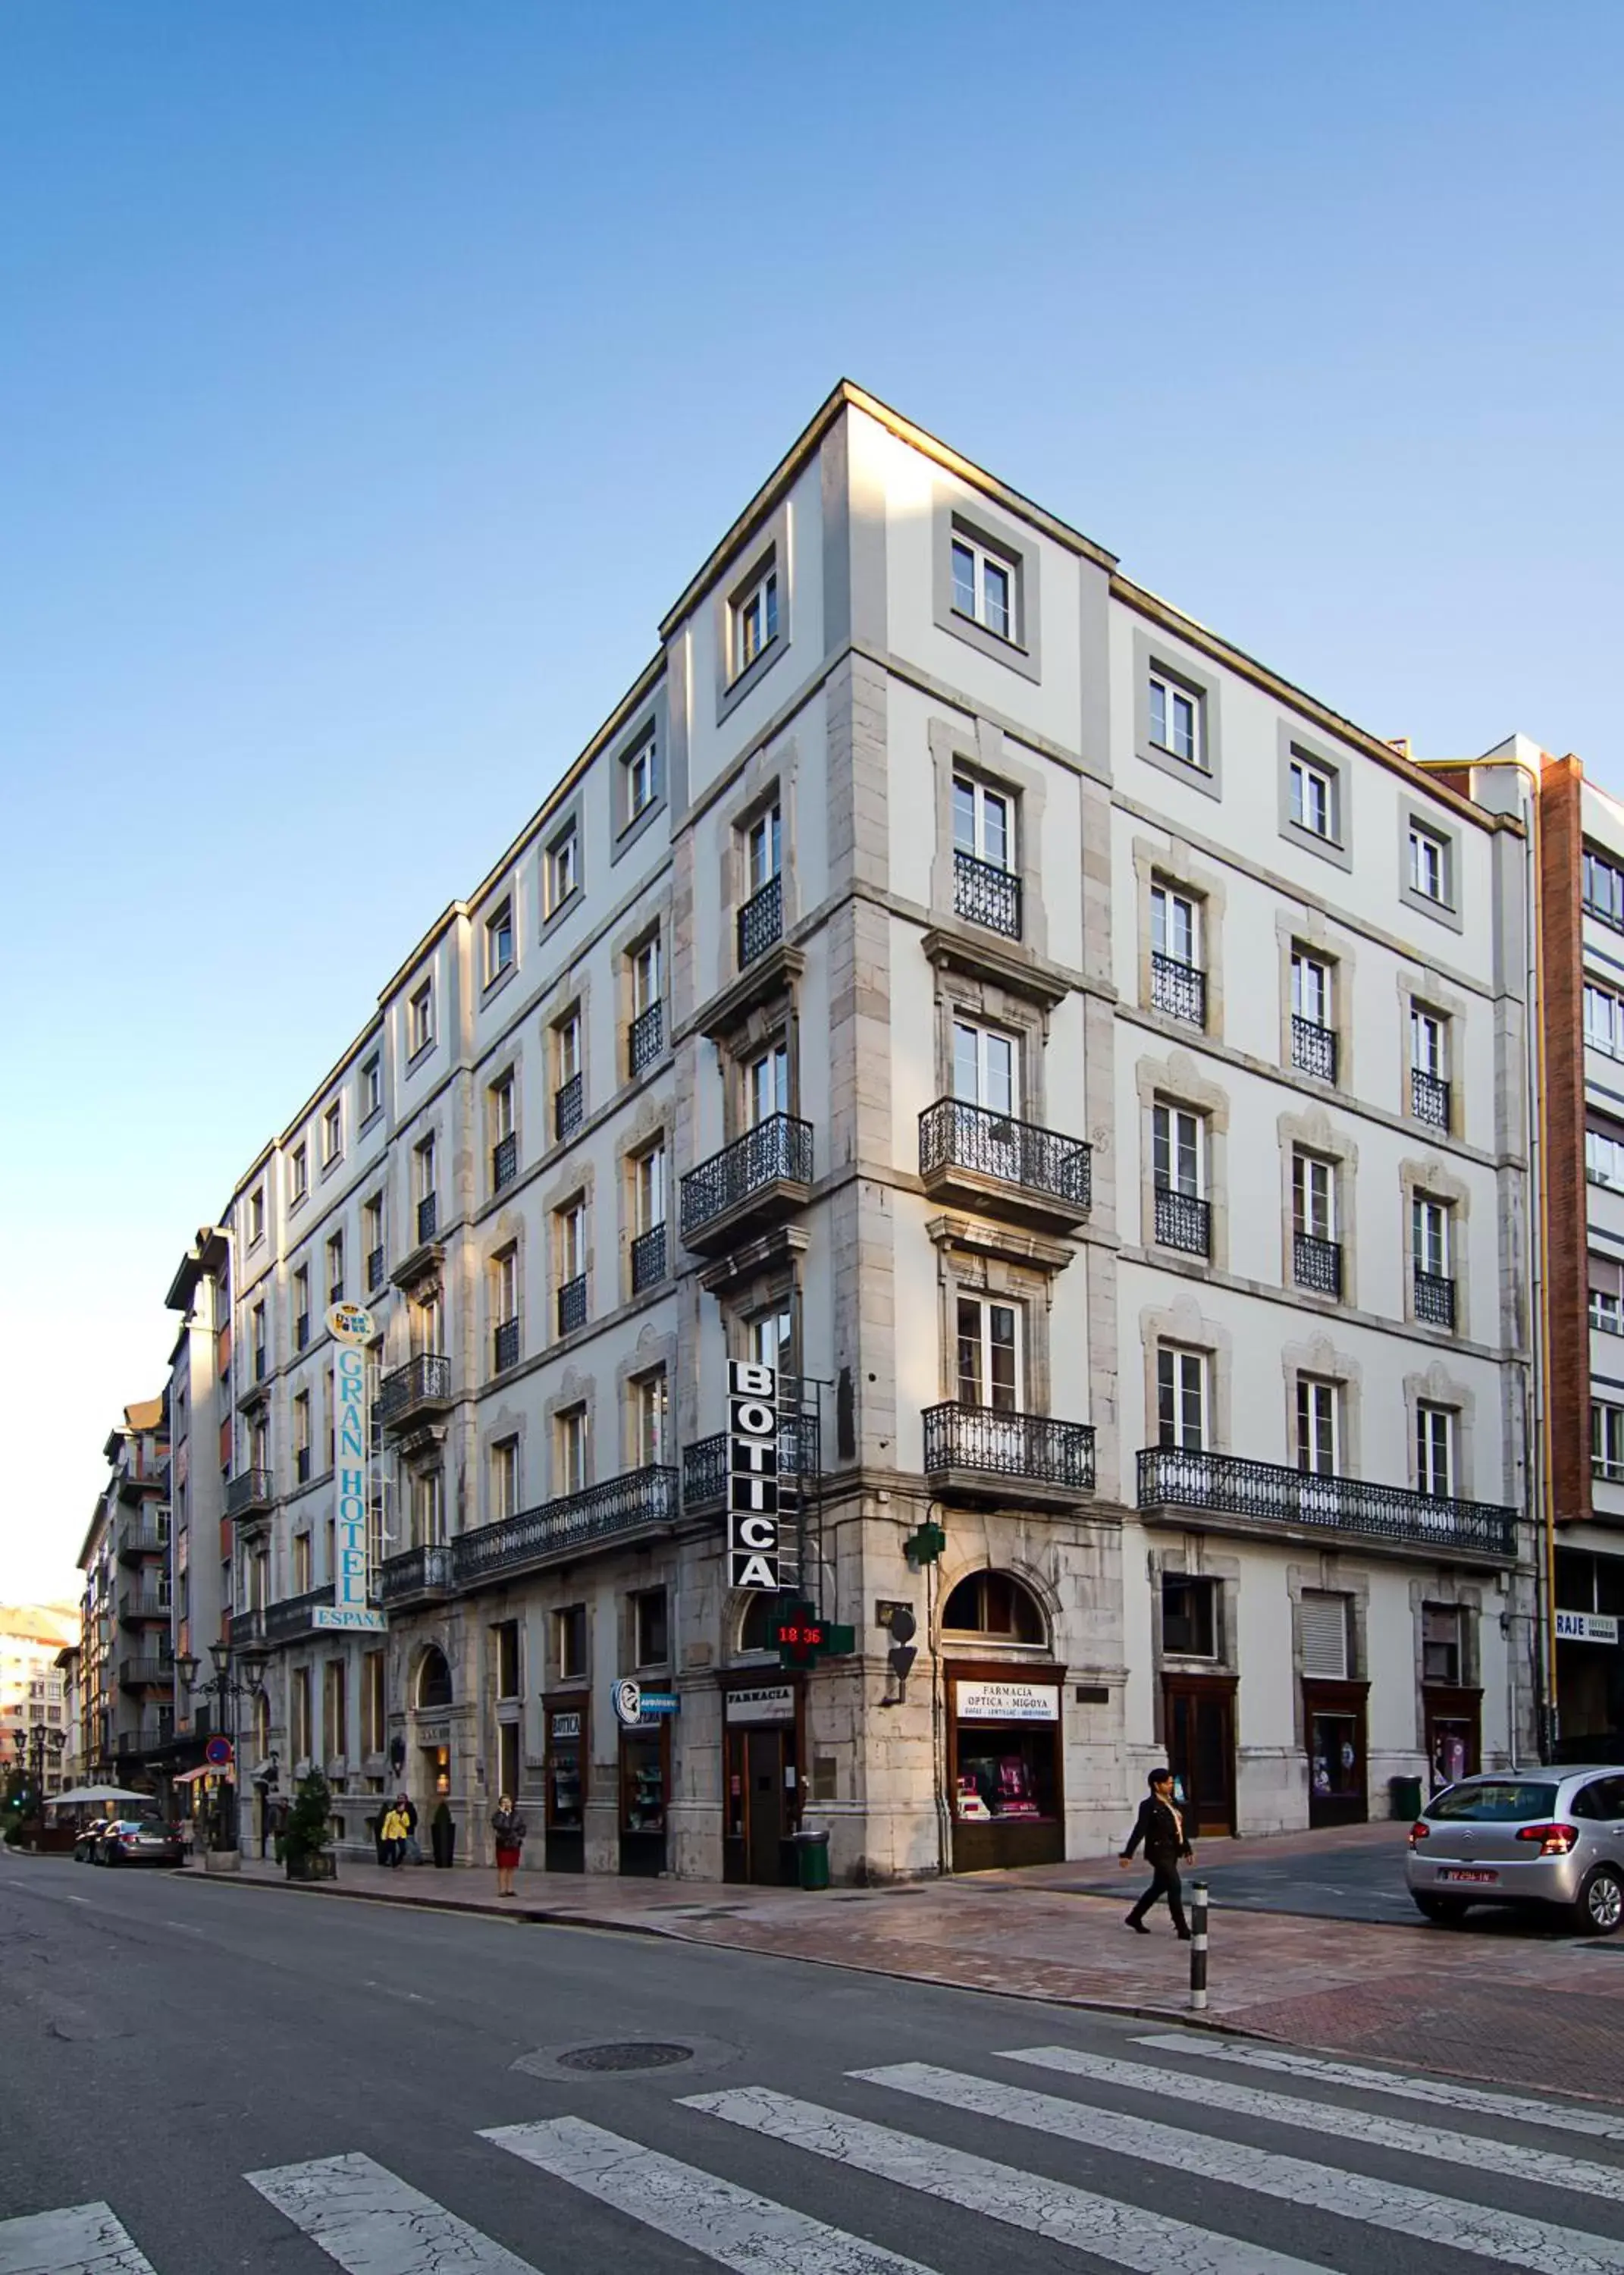 Facade/entrance, Property Building in Gran Hotel España